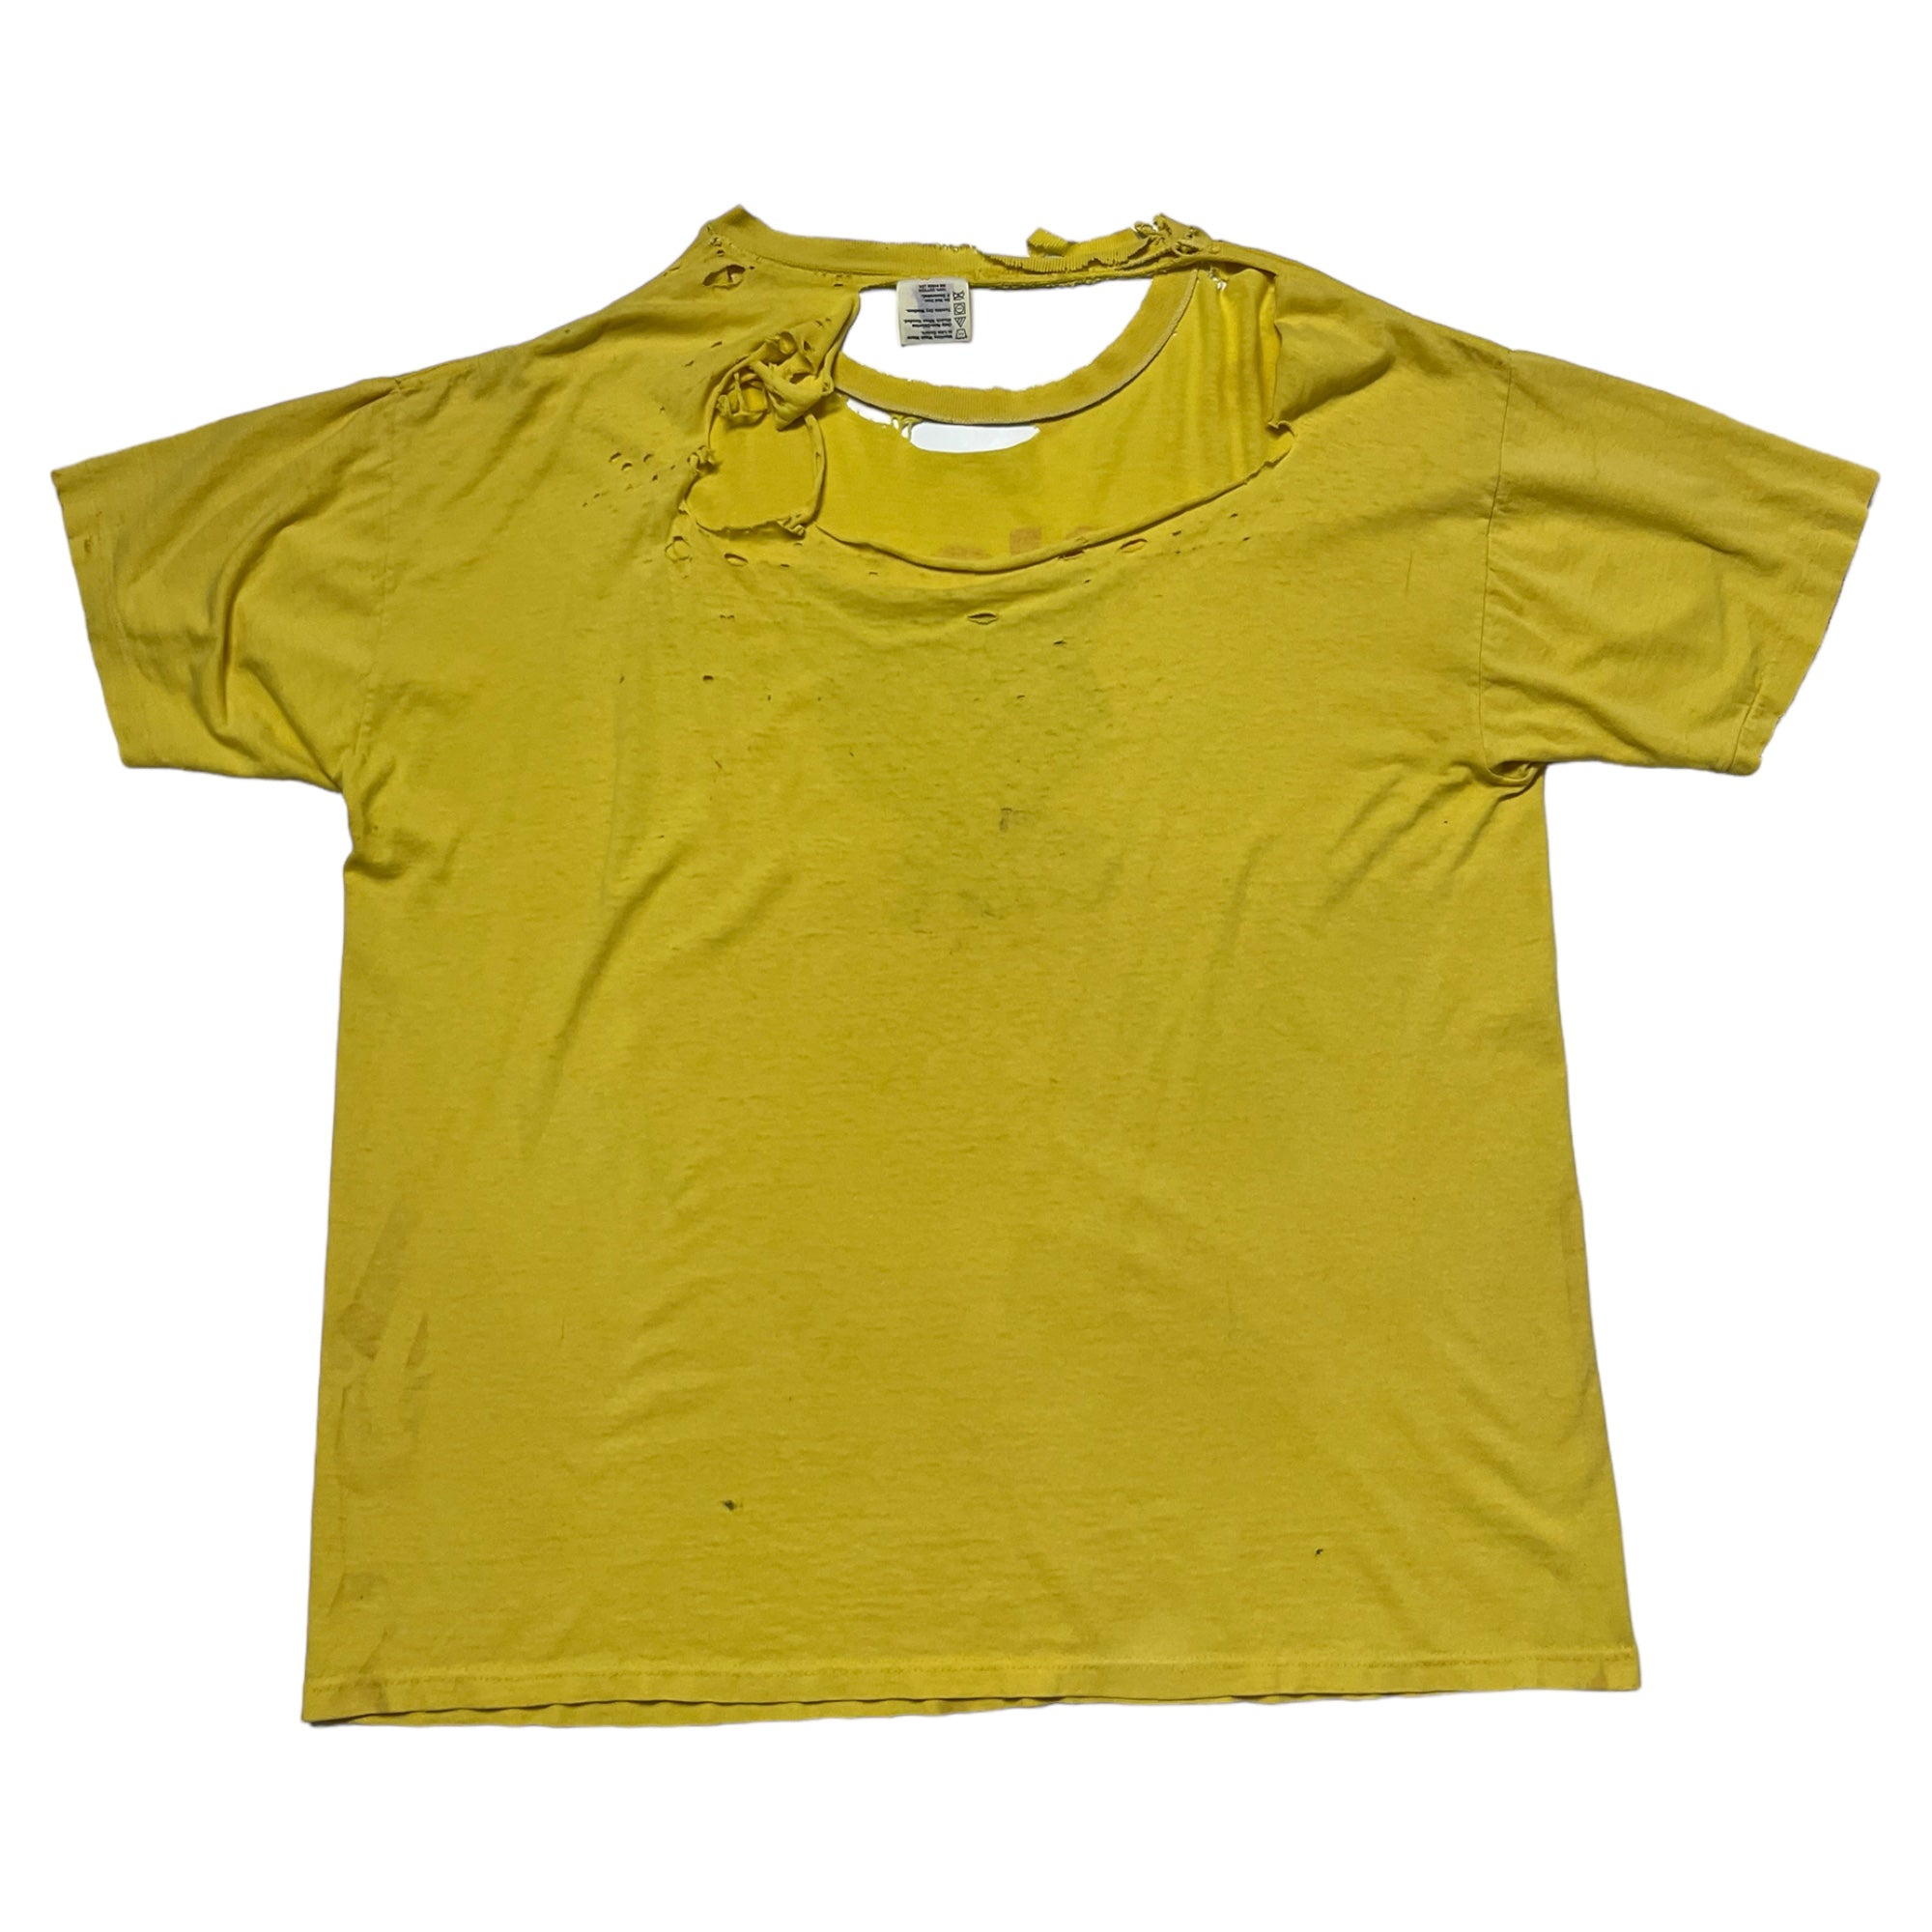 1990s Thrashed Black Cat Fireworks T-Shirt - Yellow - XL/XXL